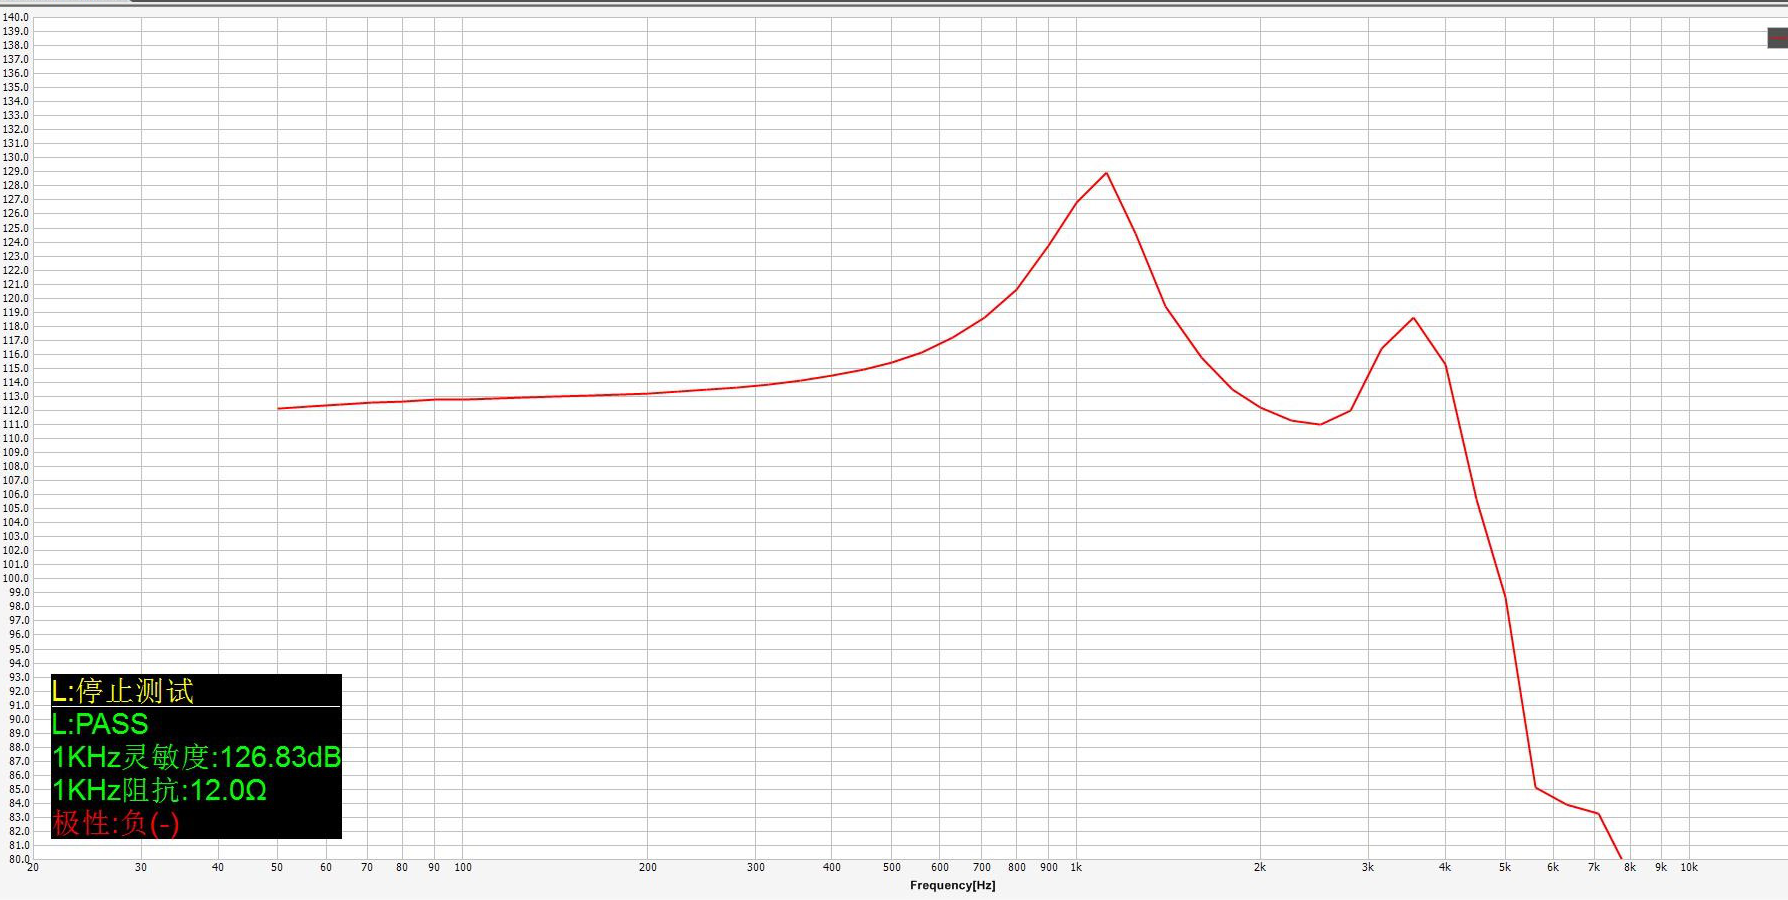 耳机喇叭评率响应曲线图.png